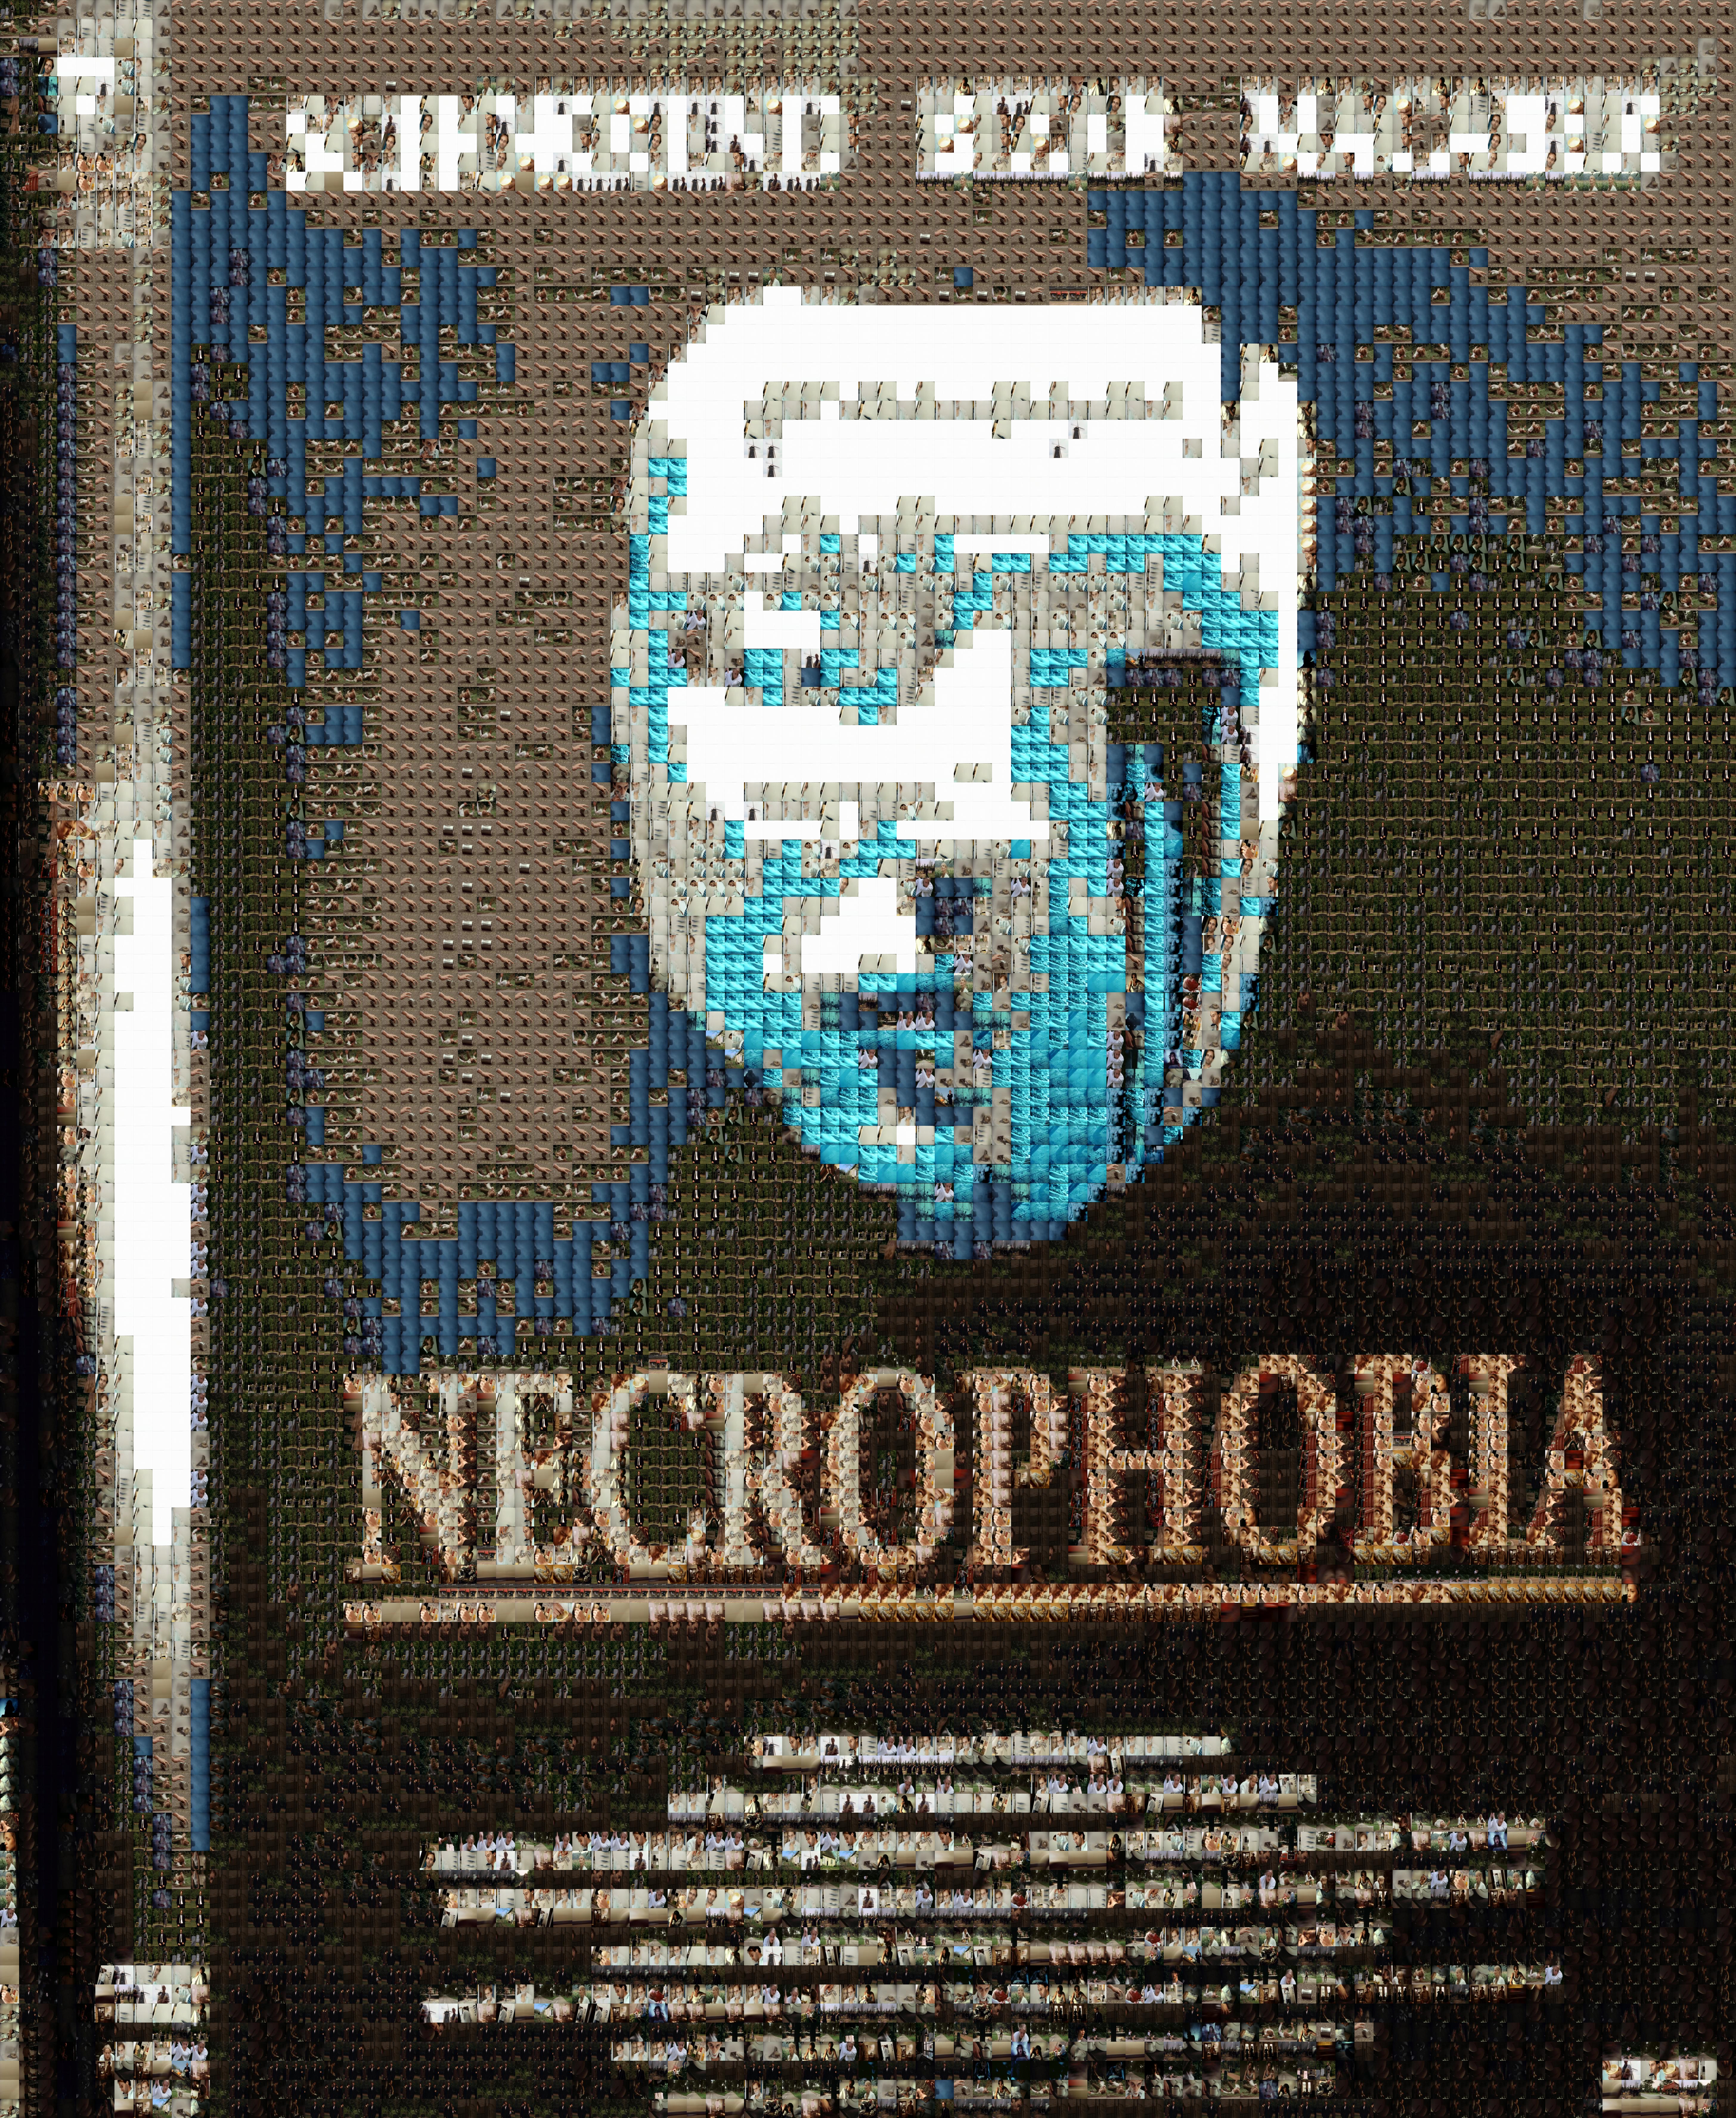 necrophobia